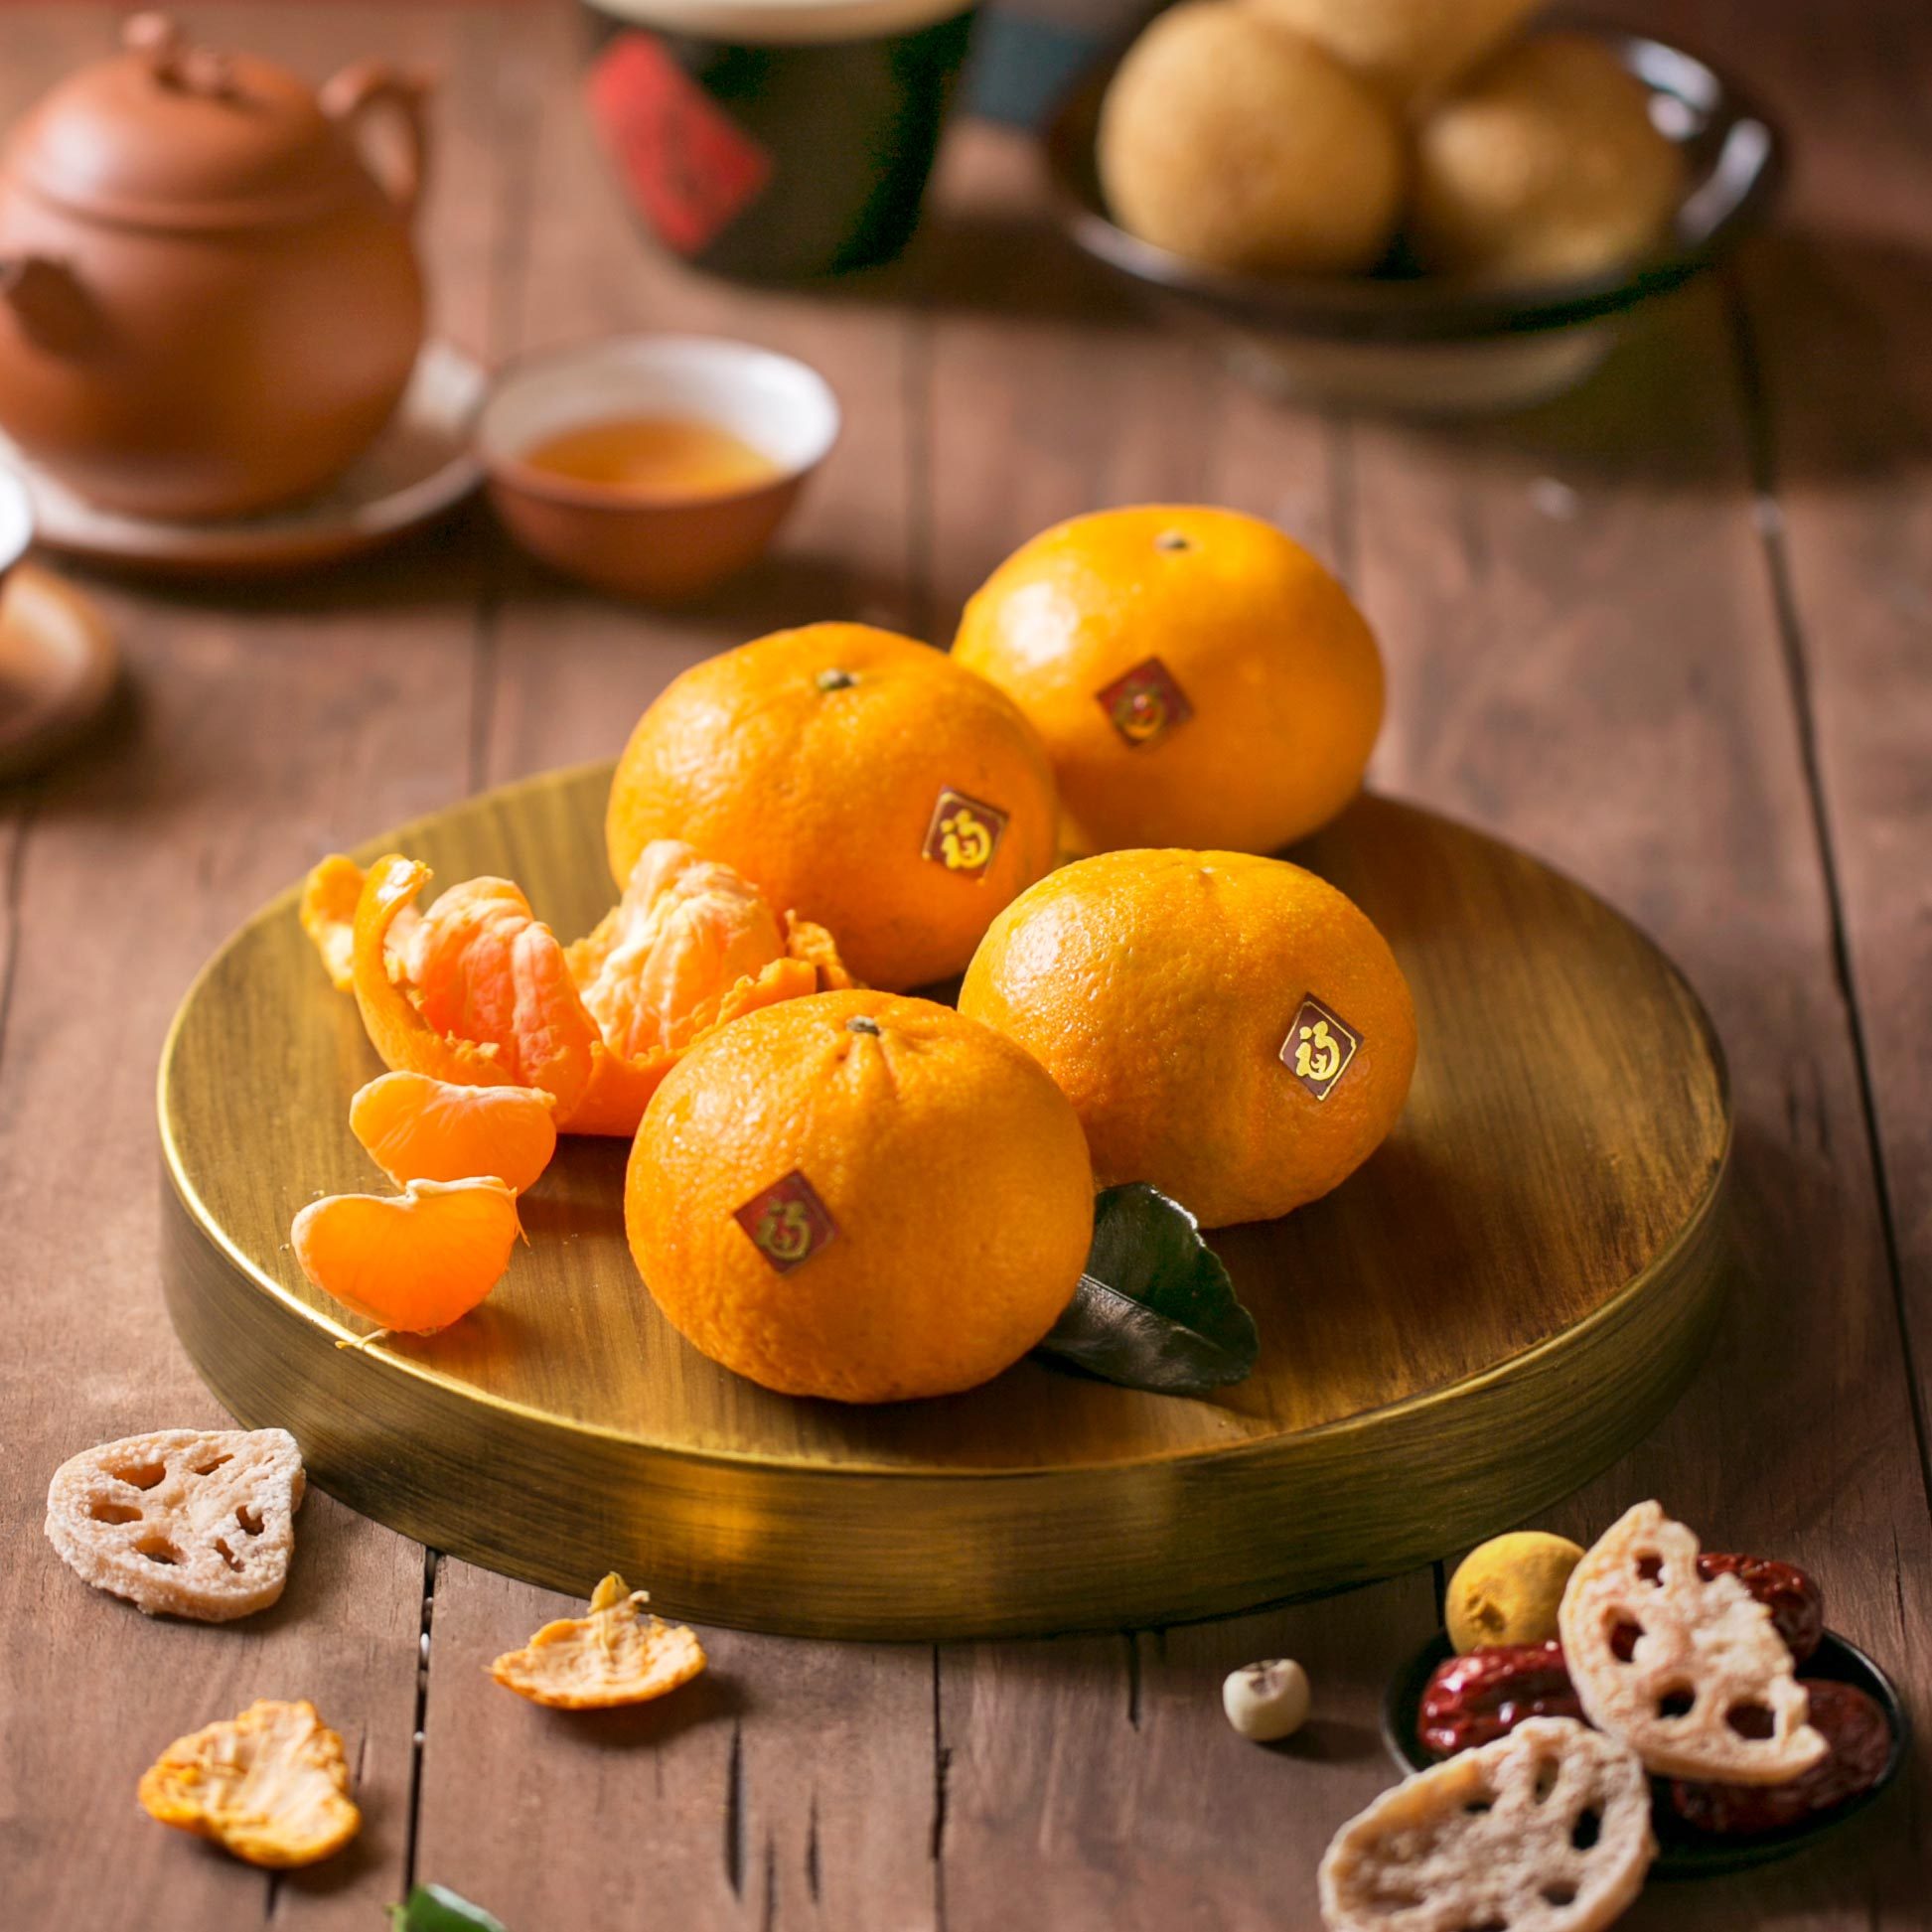 tangerines chinese new year